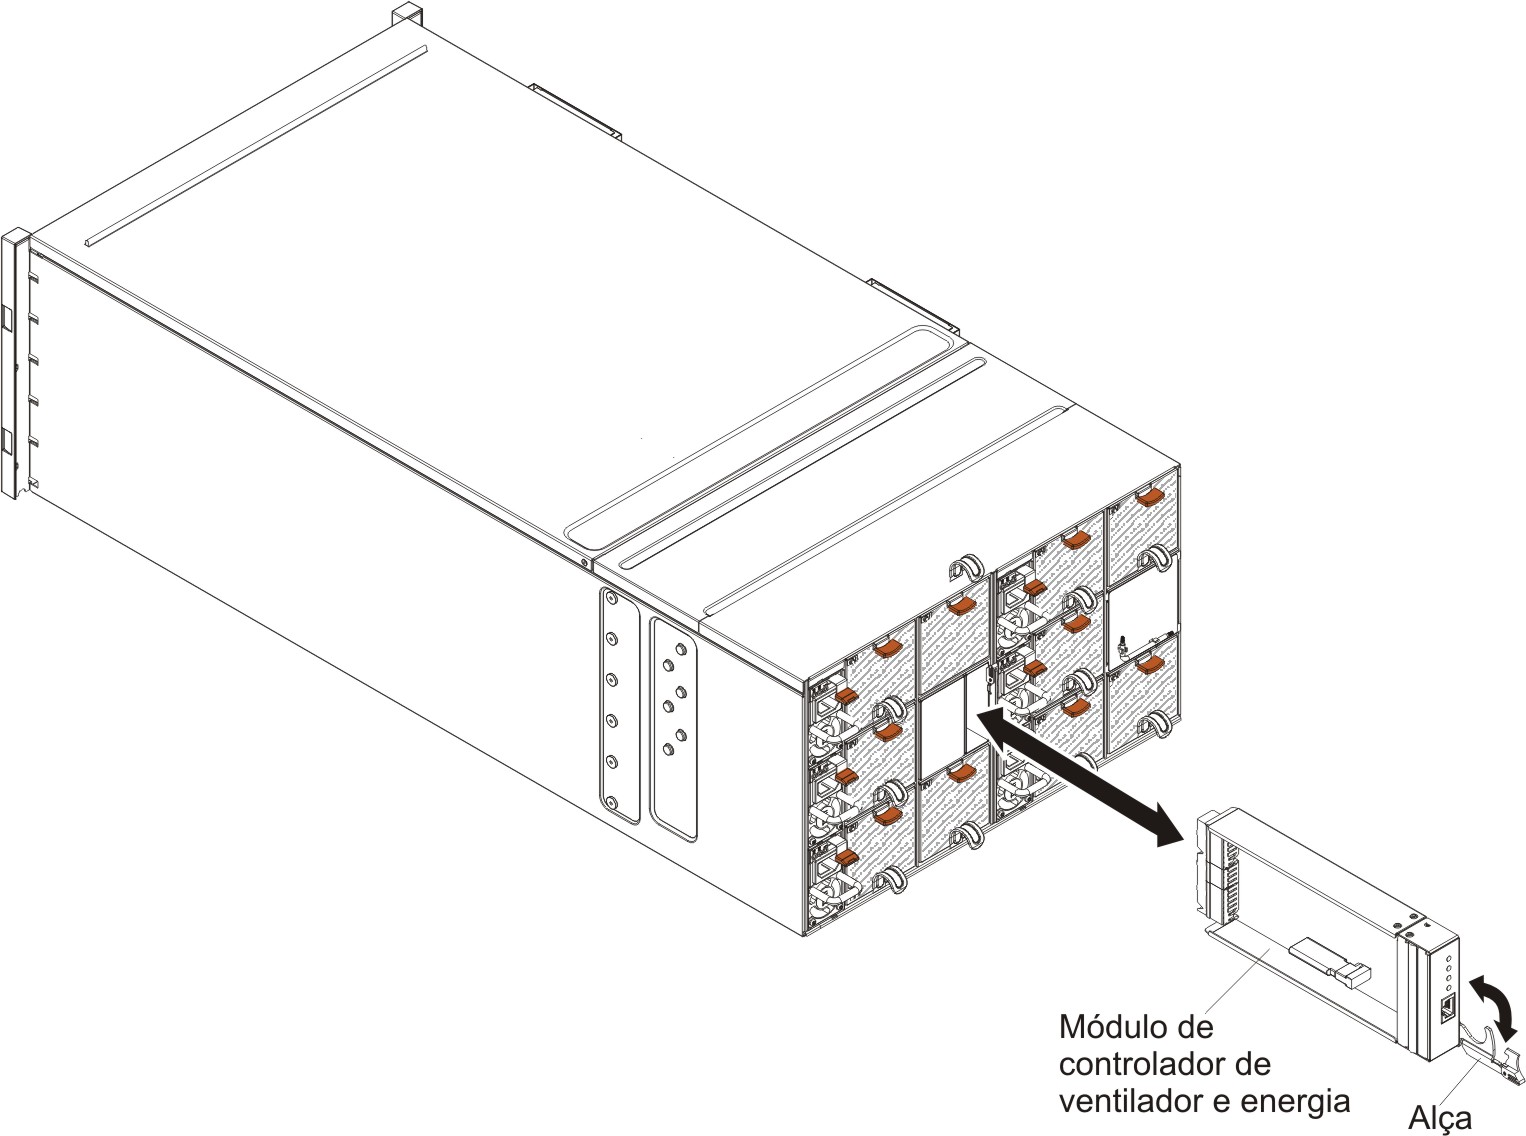 Gráfico ilustrando a instalação de um controlador de ventilador e energia no chassi